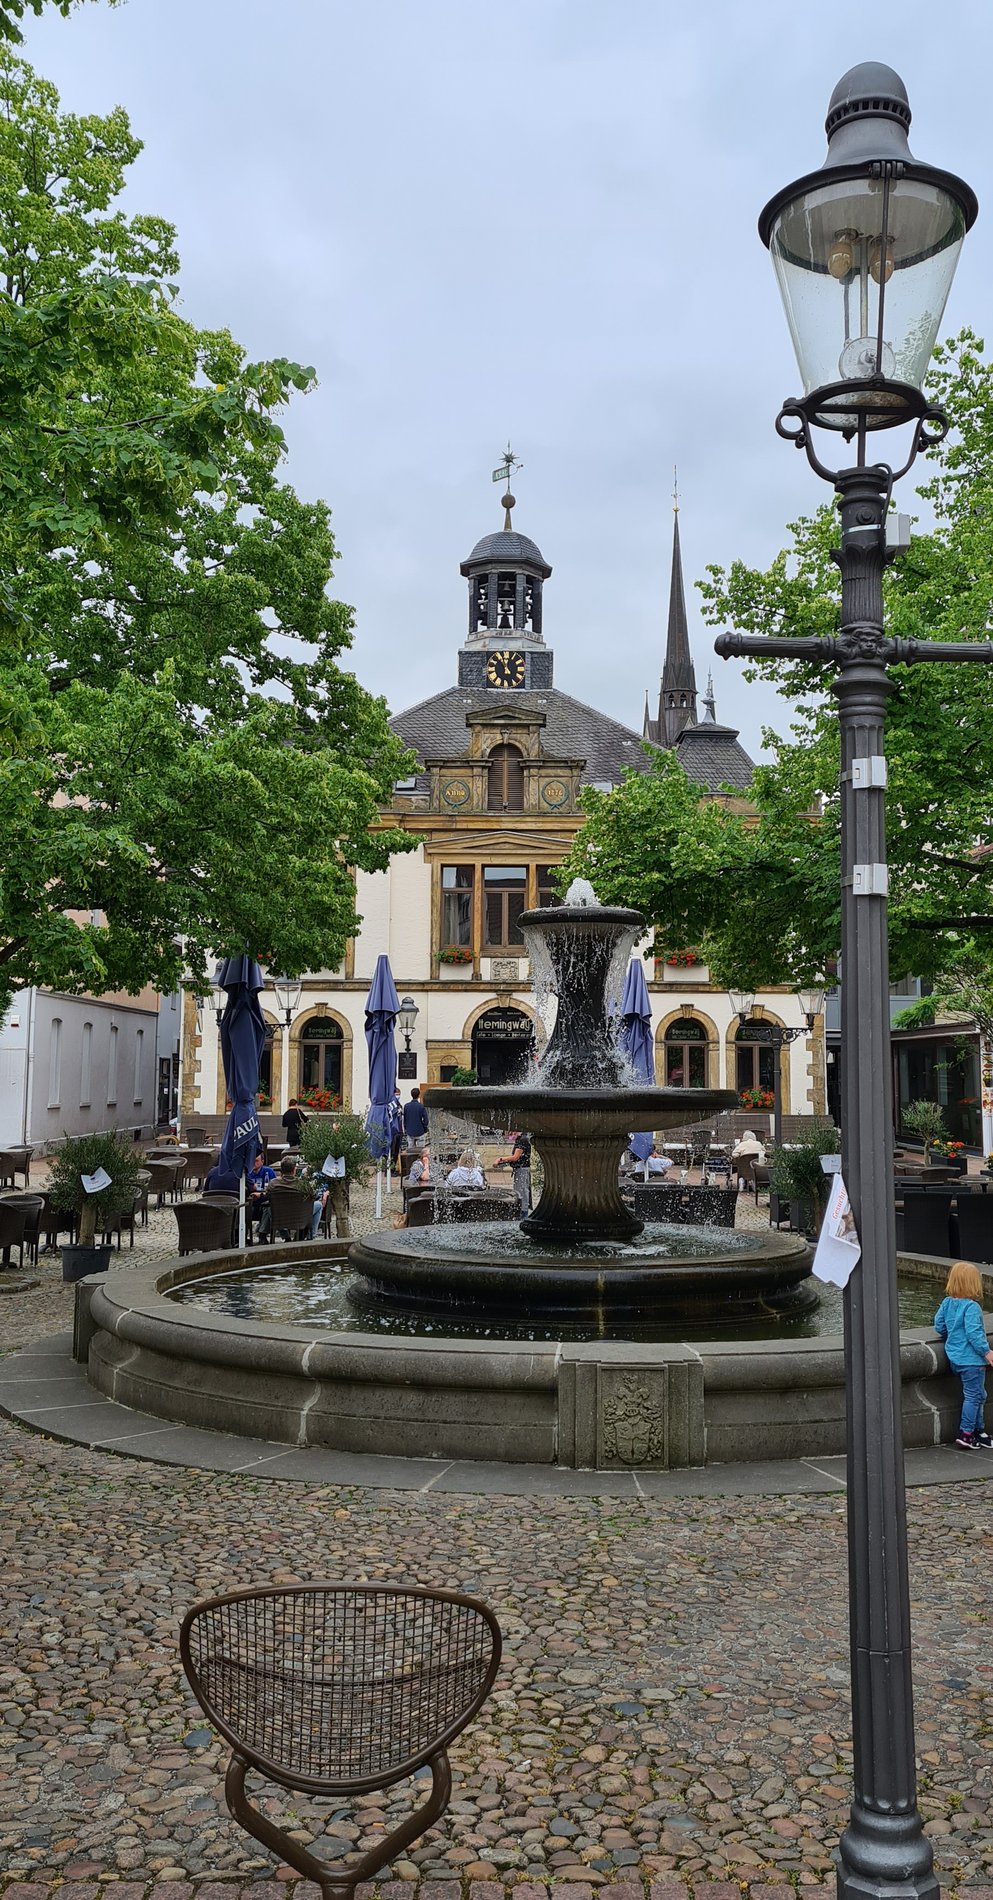 Man blickt auf einen geplasterten Platz in Mitten der Innenstadt. Auf dem Platz steht ein Springbrunnen. Im Hintergrund ist das alte Rathaus zu erkennen.